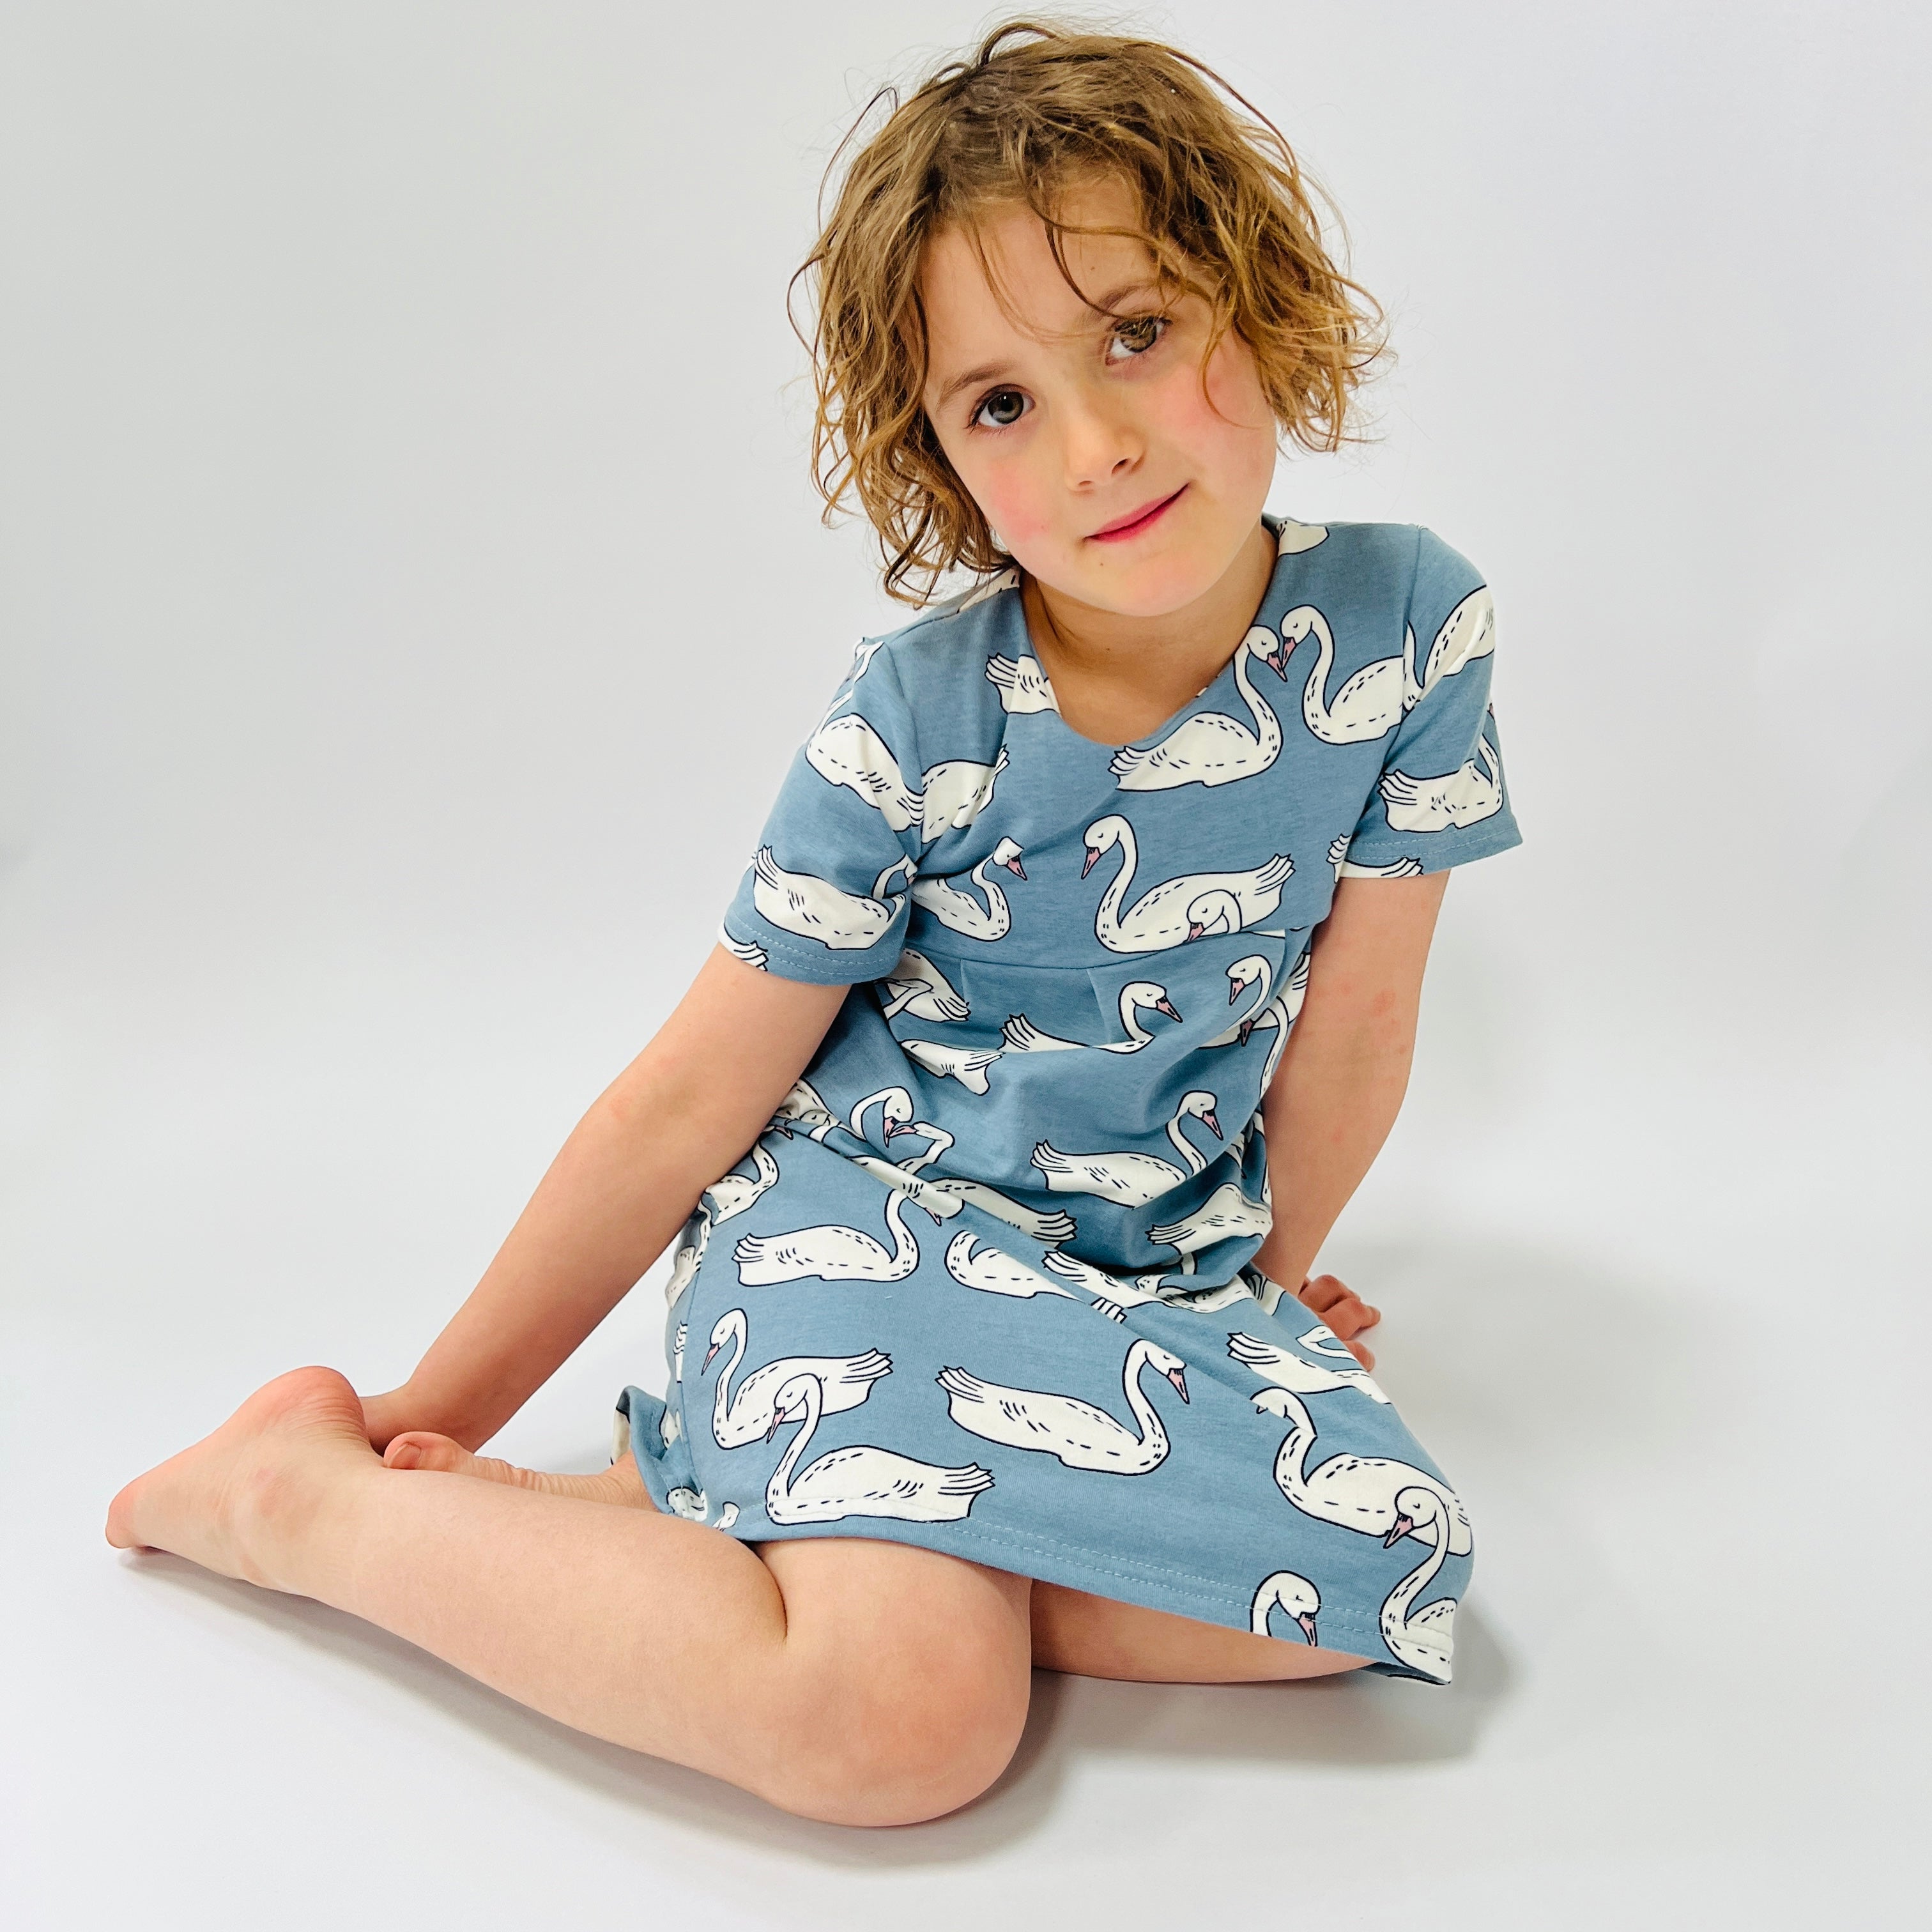 Eddie & Bee organic cotton short sleeved dress in Blue “Swan Lake” print